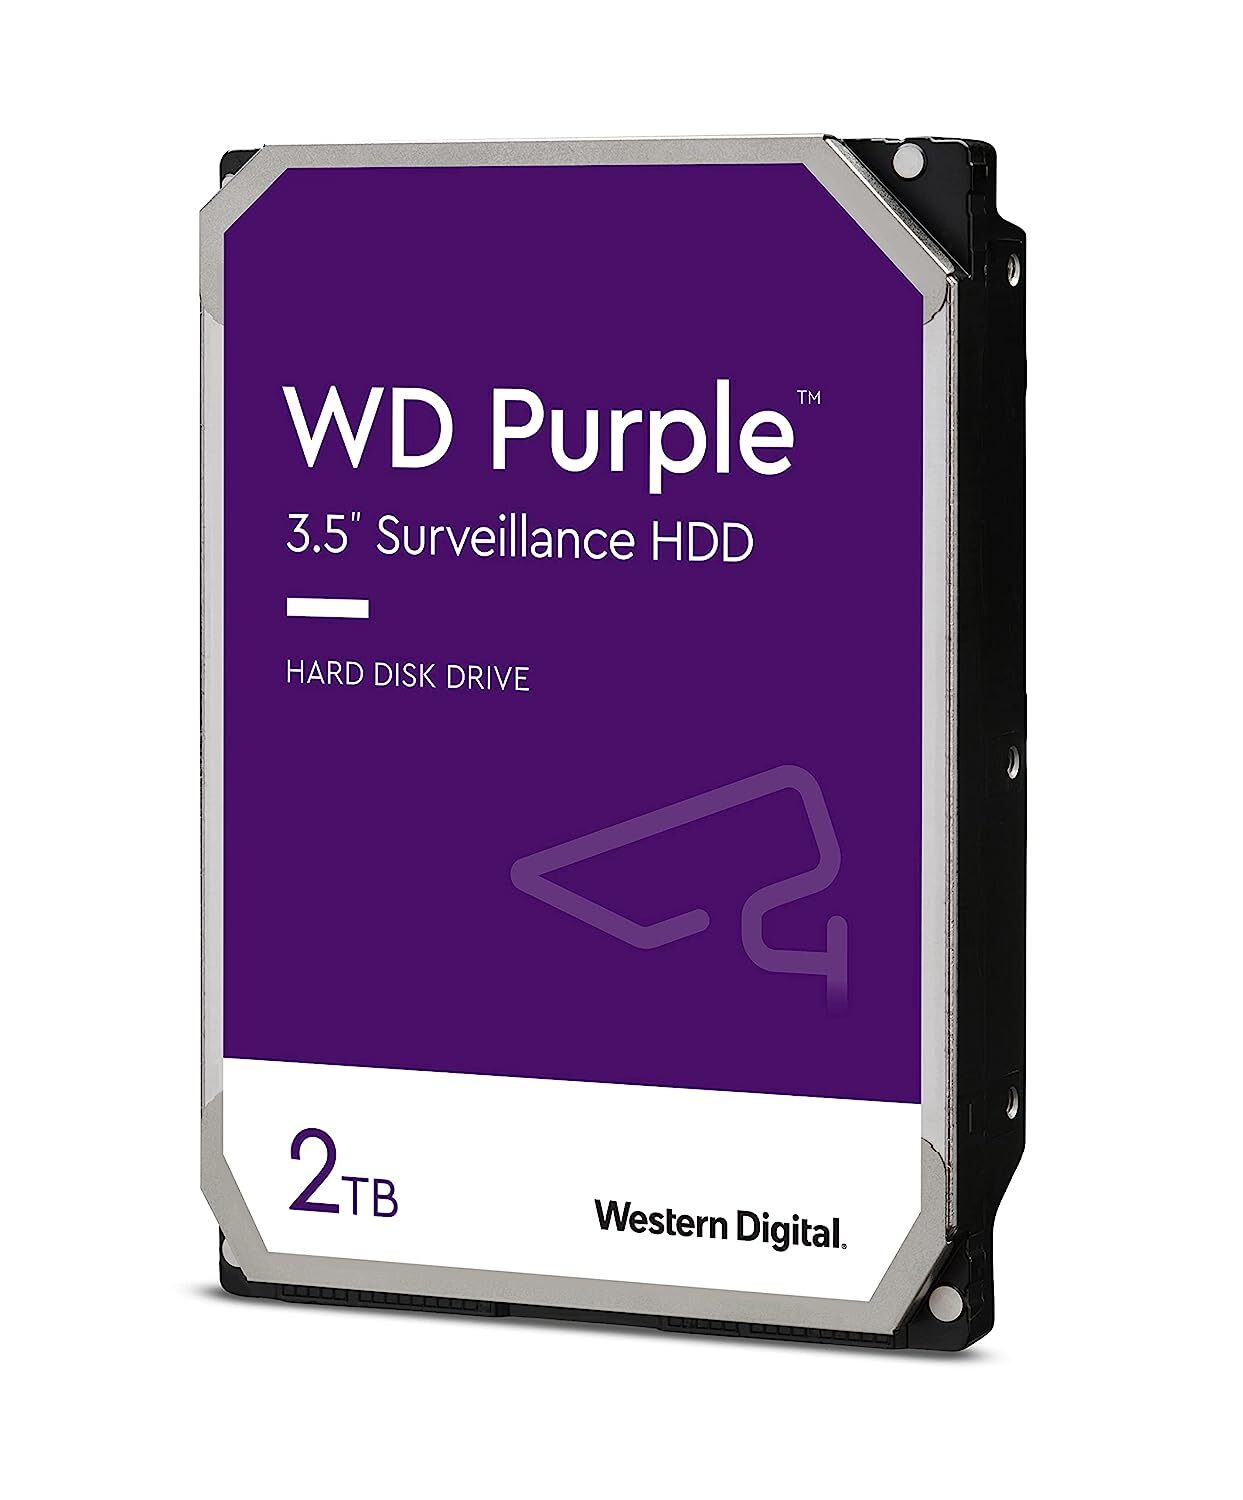 Western Digital WD Purple 2TB SATA Internal Surveillance Hard Drive (WD20PURZ)